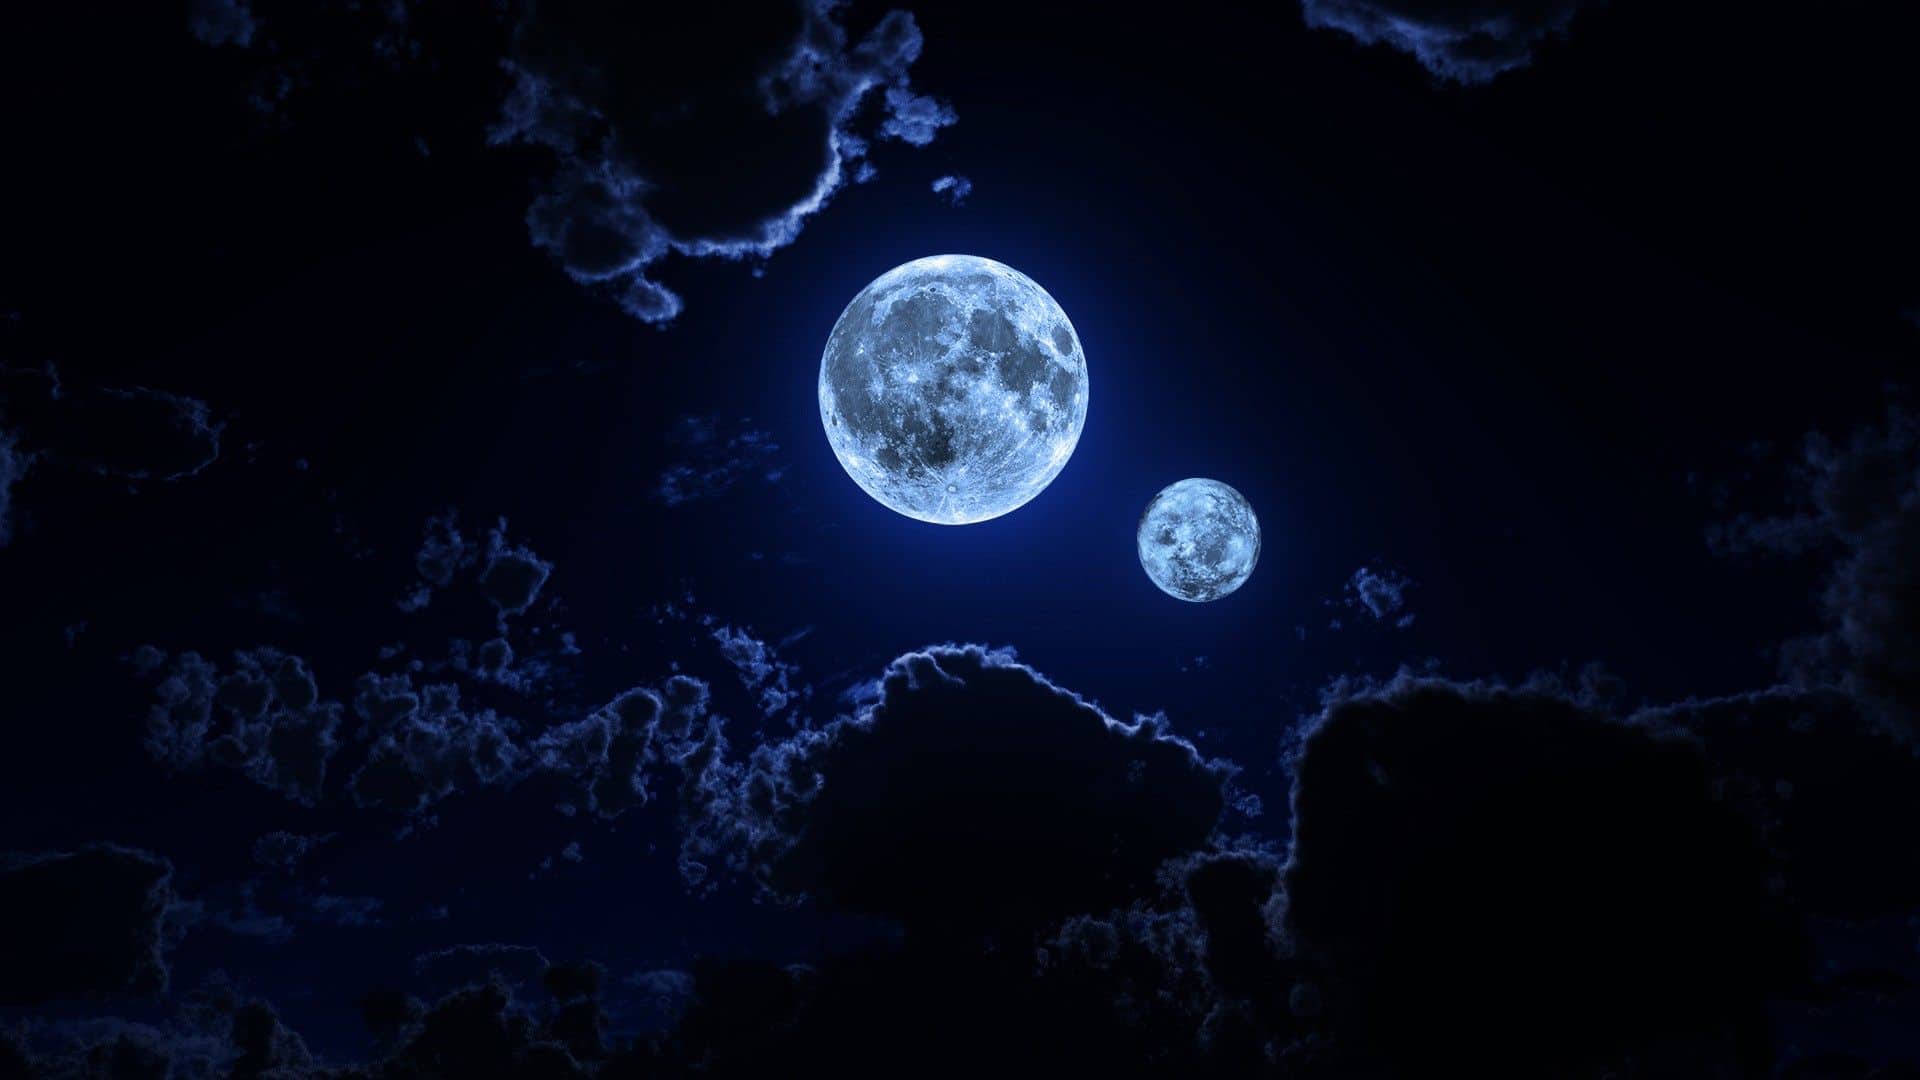 https://www.dawnclark.net/wp-content/uploads/2014/05/250Moon_night_sky.jpg